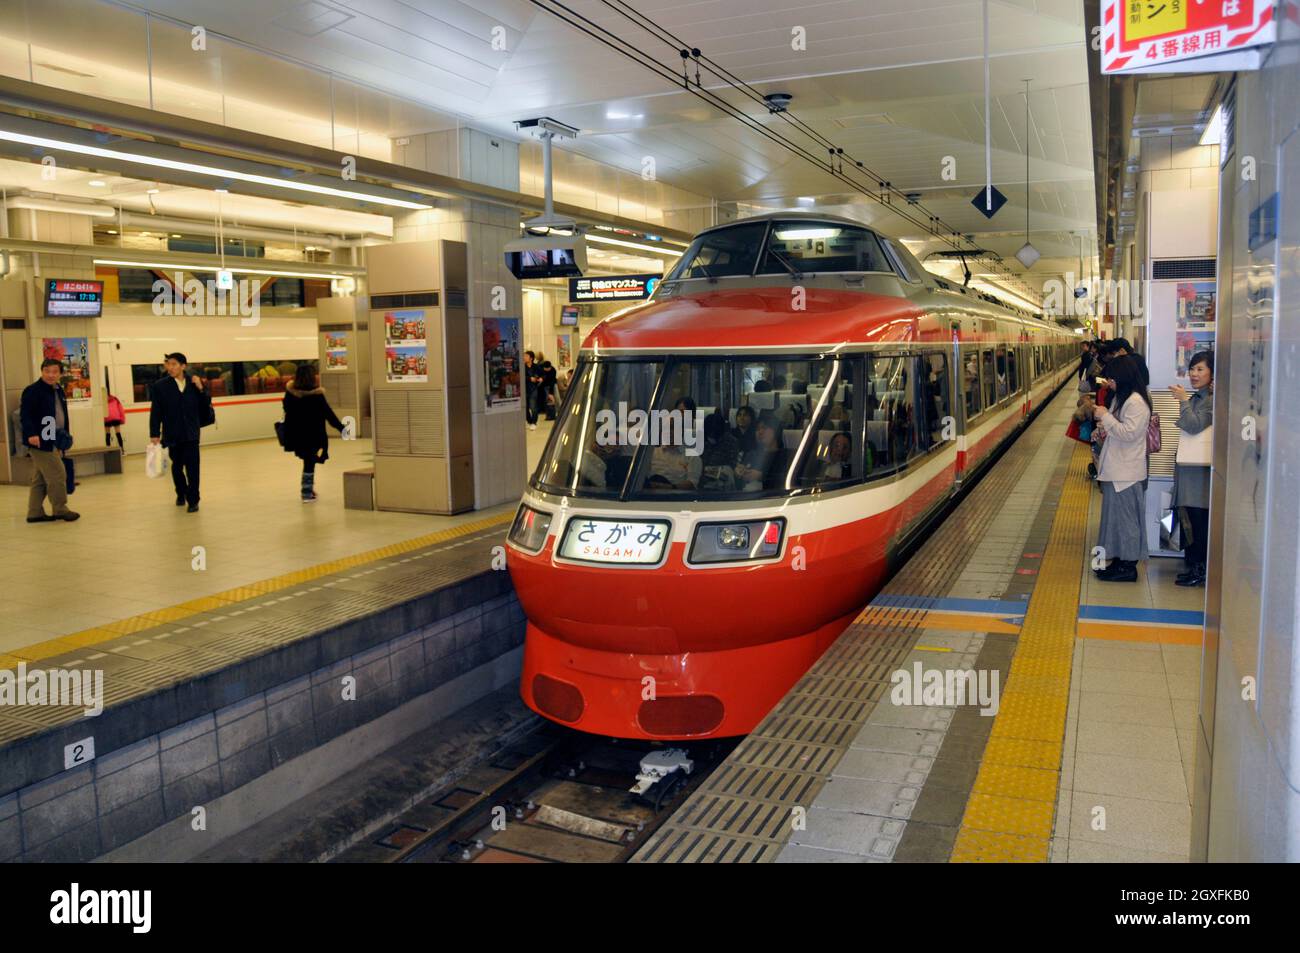 El tren expreso llega a una plataforma en la estación de tren de Enoshima, Enoshima, Japón Foto de stock